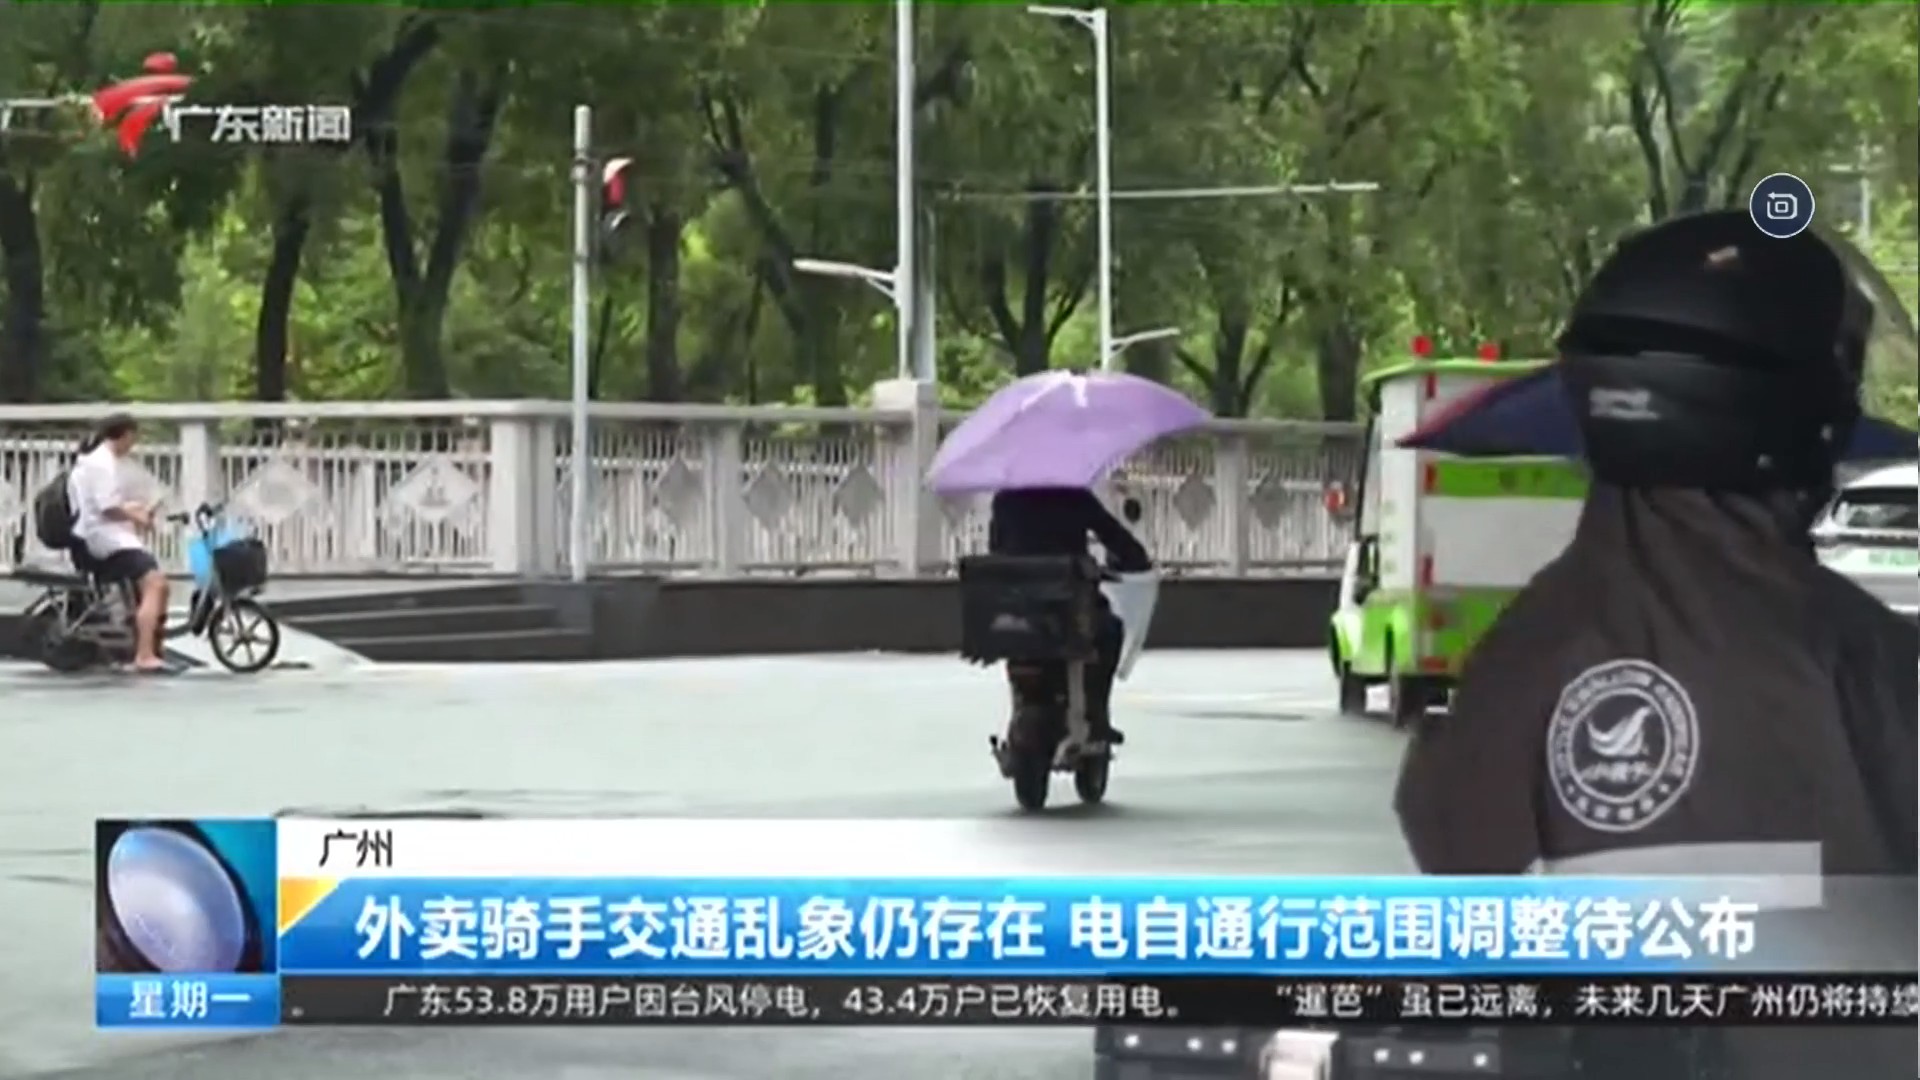 20220704广东新闻频道 今日焦点 广州：外卖骑手交通乱象仍存在 电自通行范围调整待公布